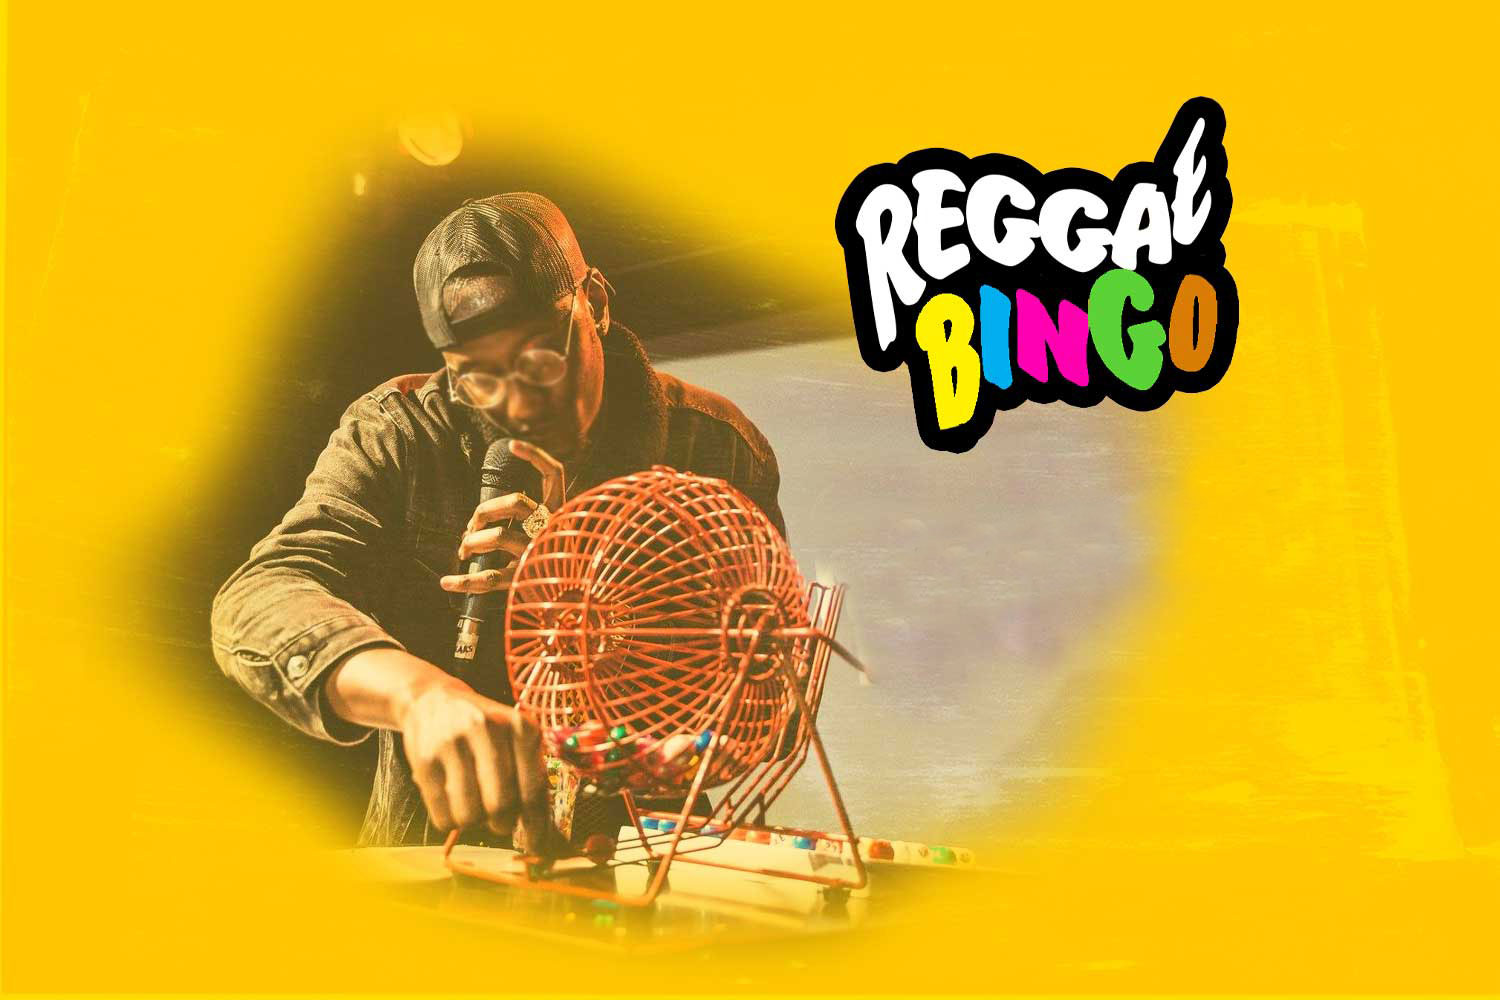 Friday, 20th May 2022 - Reggae Bingo